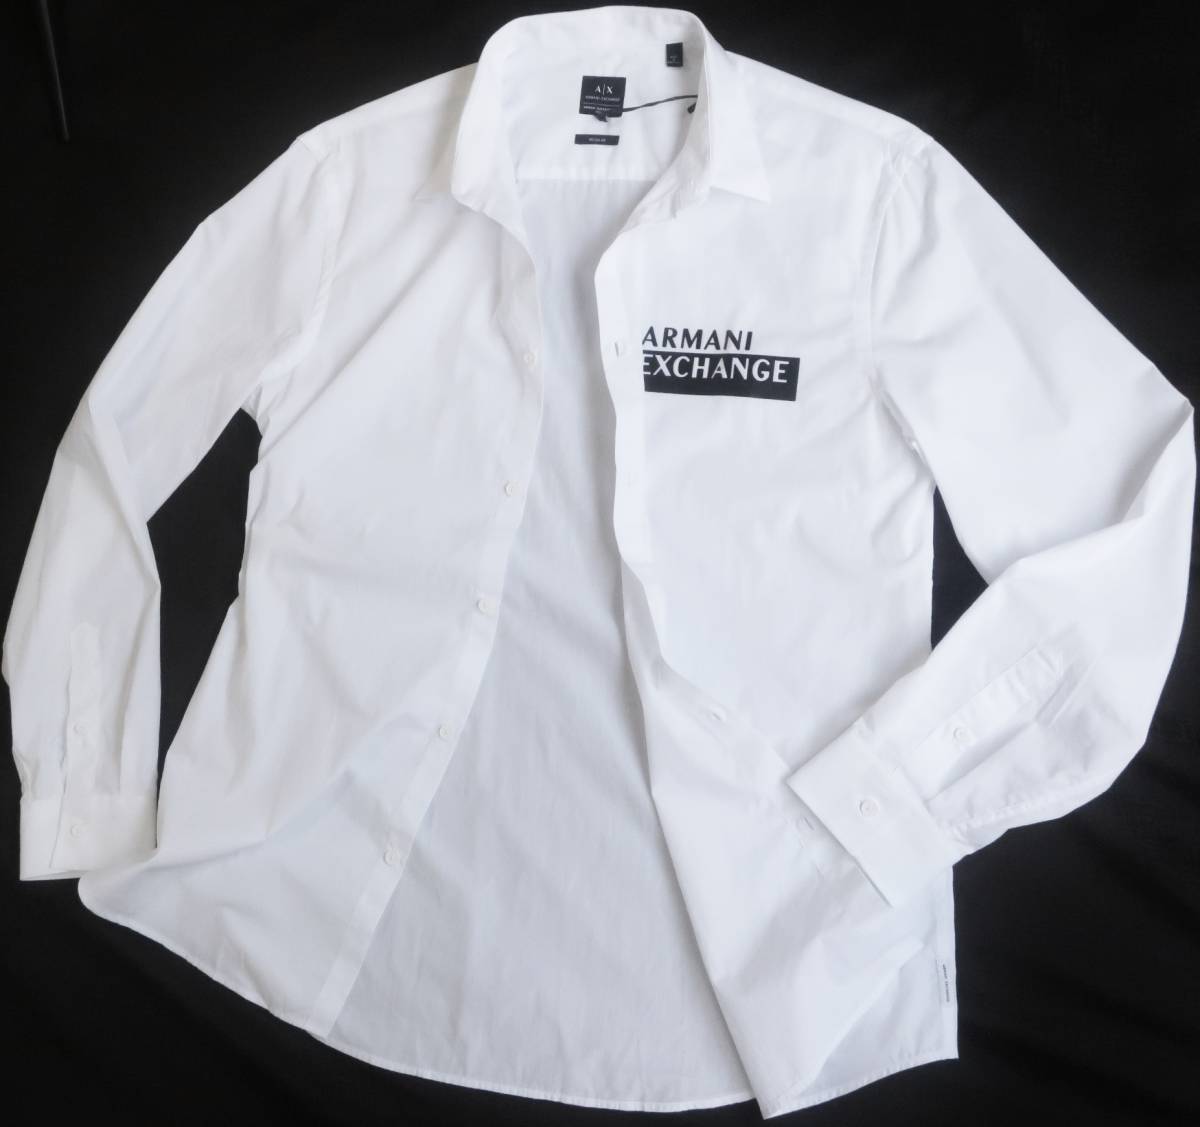  новый товар * Armani * органический * белый рубашка с длинным рукавом * черный искусственная кожа Logo * Portugal производства белый XL*ARMANI*291